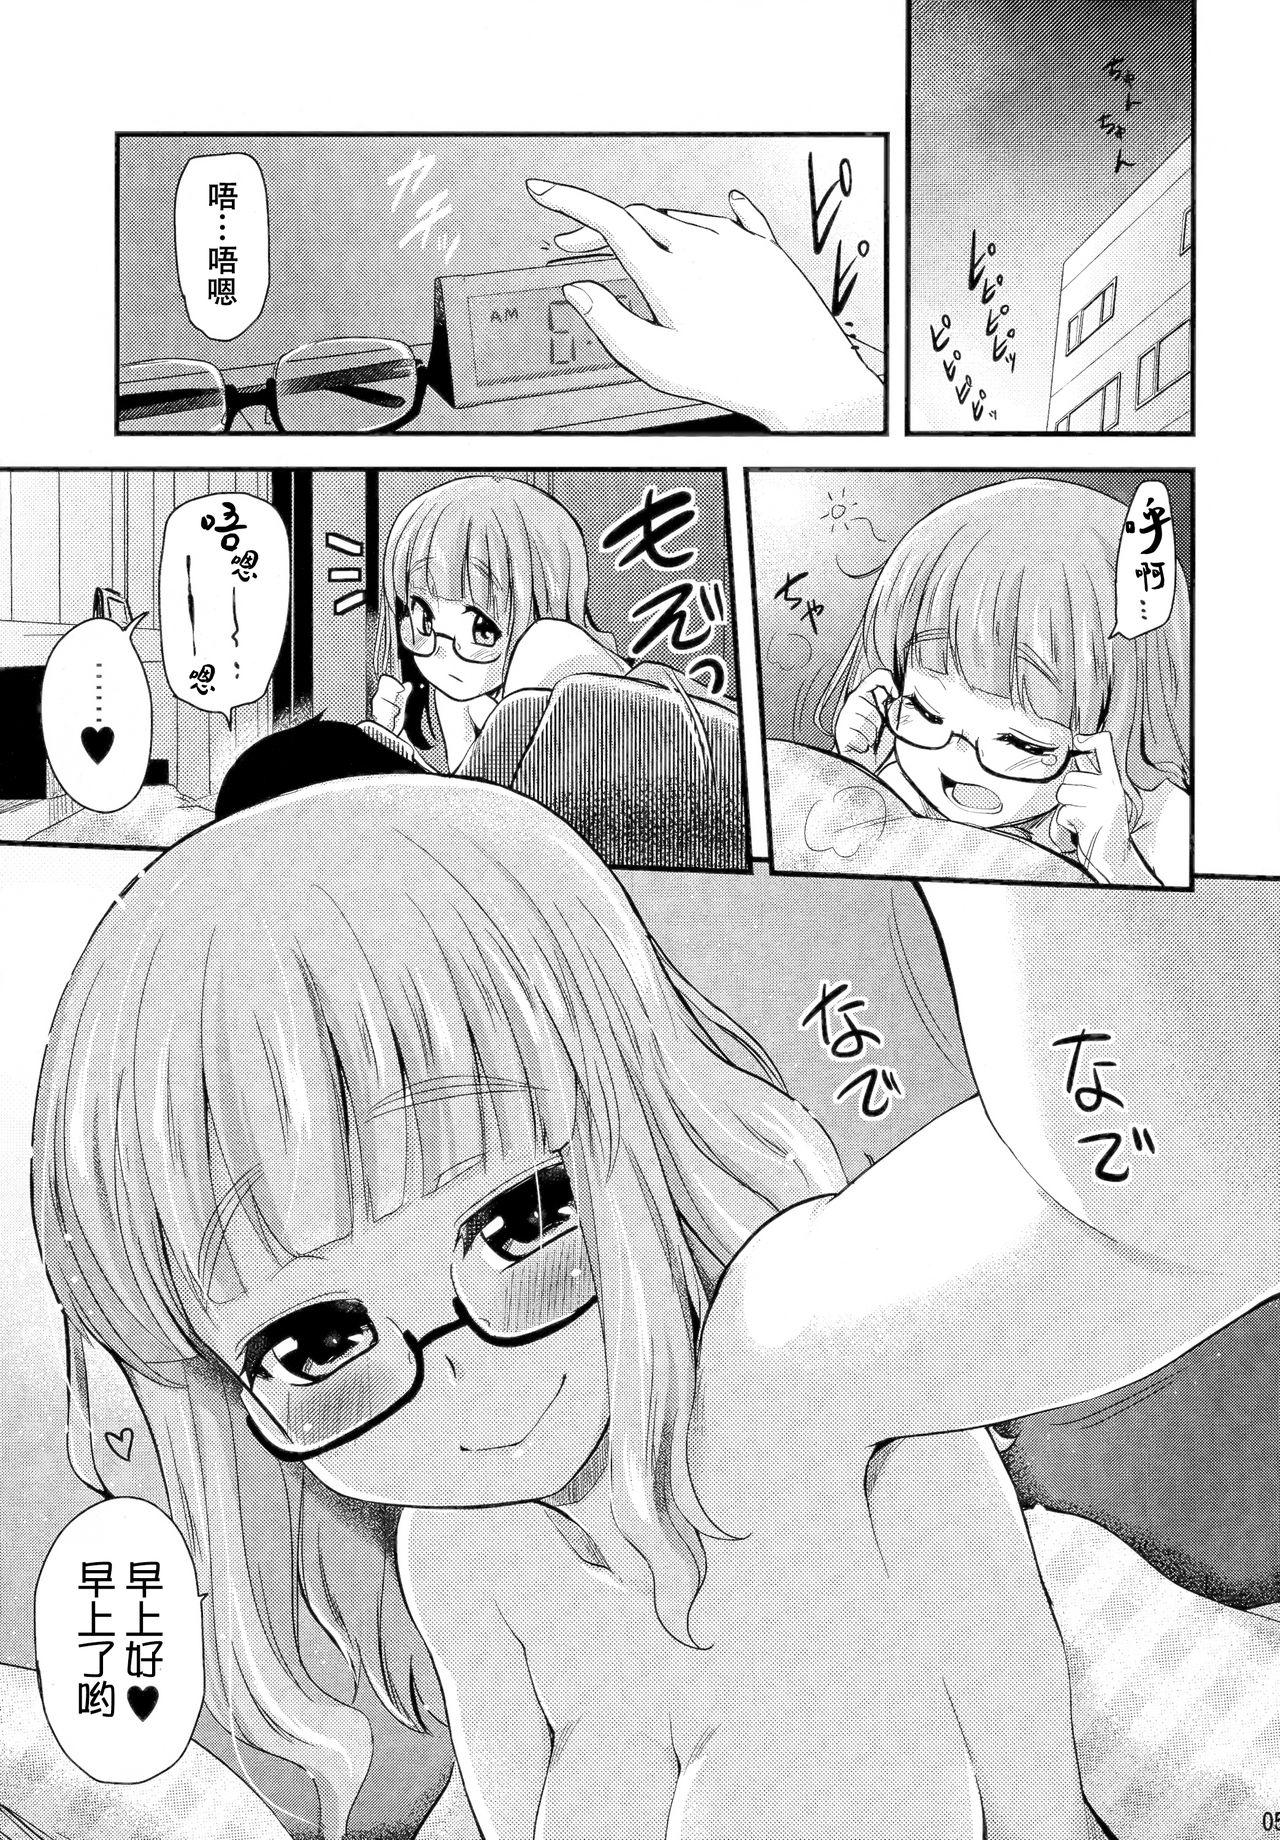 Piroca Takebe Saori-chan toiu Kanojo ga "Ohayo" to Itte Kureru Hanashi. - Girls und panzer Pussy Eating - Page 5